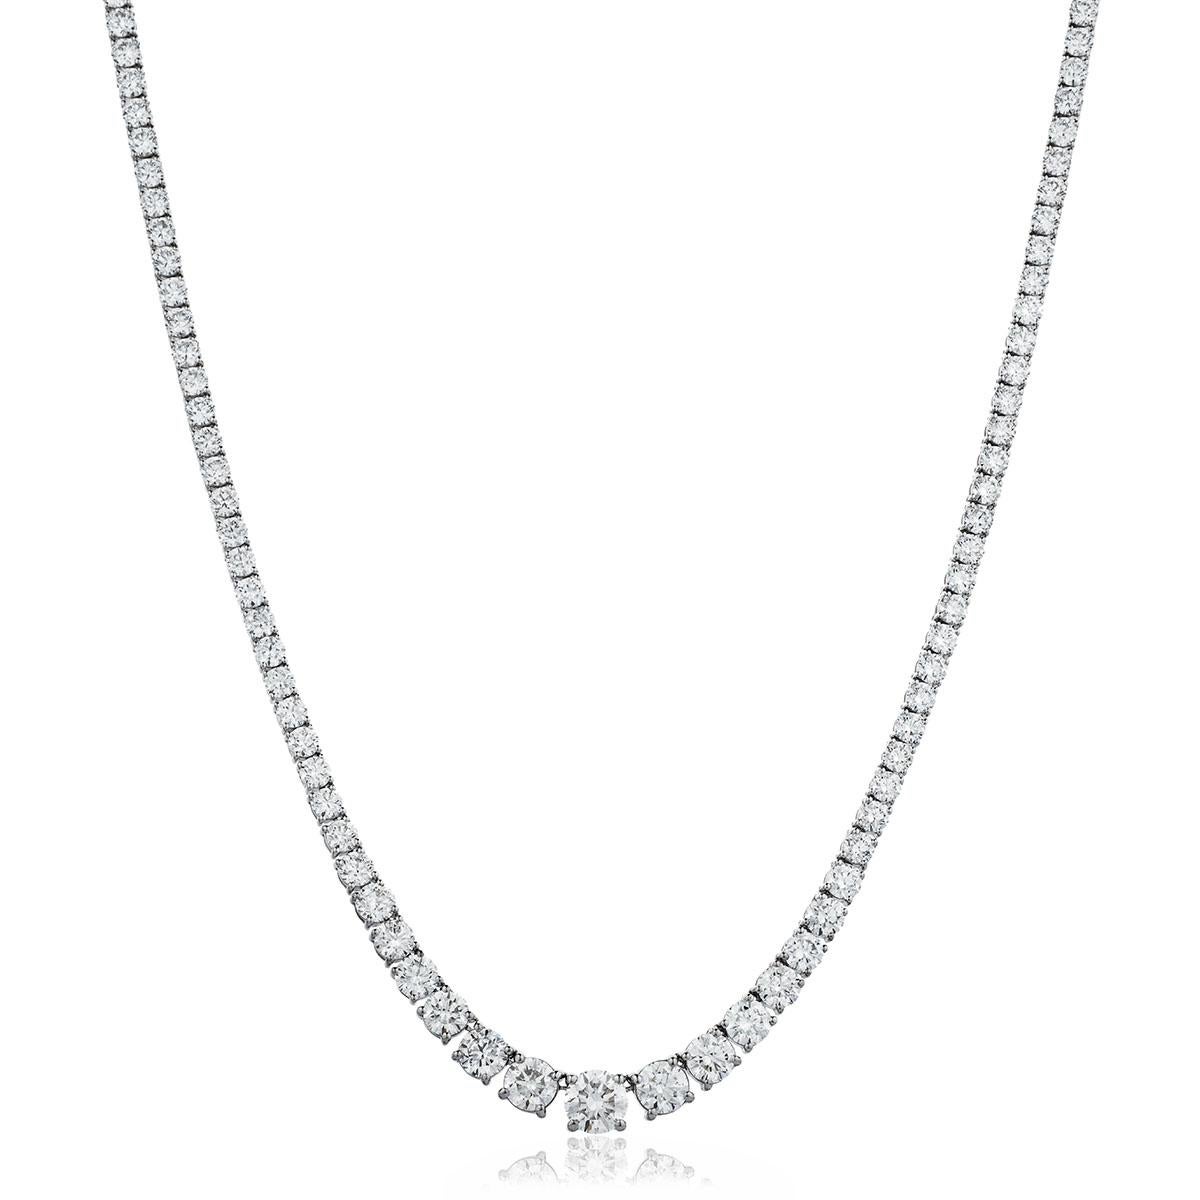 Ce collier Riviera étonnant et impressionnant présente un poids total de diamants de 6,65 carats dans des pierres précieuses de taille brillante ronde magnifiquement graduées, d'une couleur blanche étincelante et d'une clarté SI1. Chaque pierre est